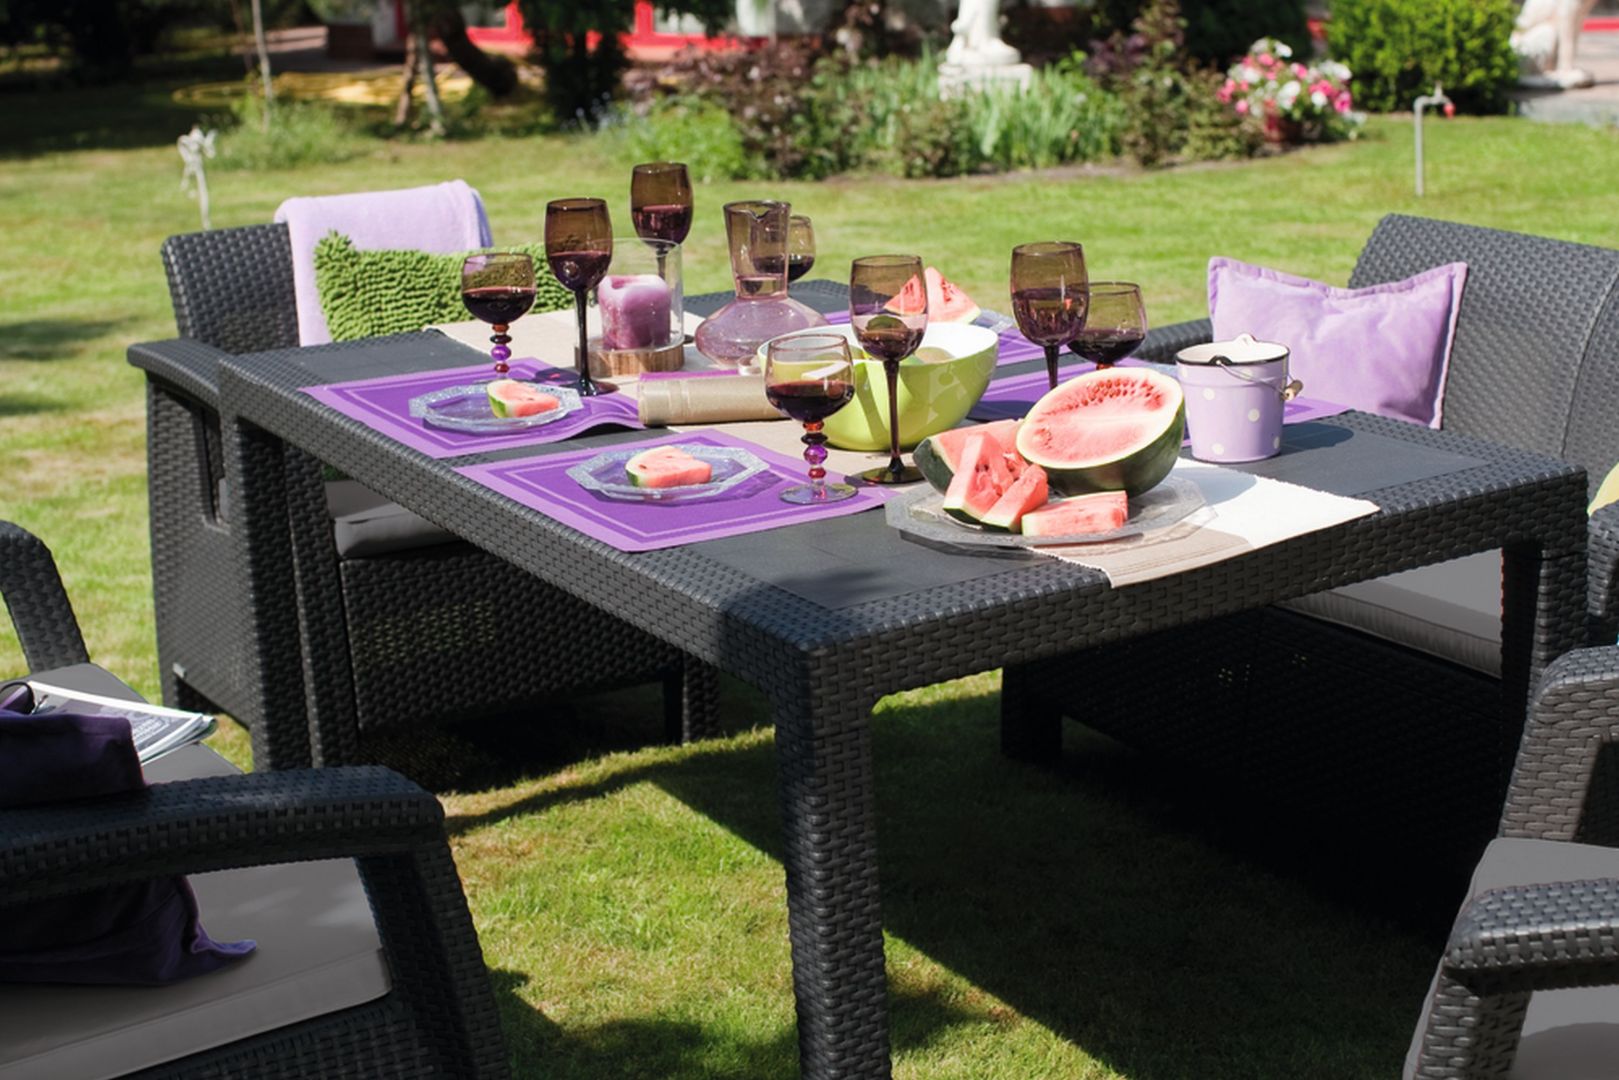 Obiad na tarasie lub w ogrodzie – jaki stół wybrać? Na zdj. CORFU FIESTA 